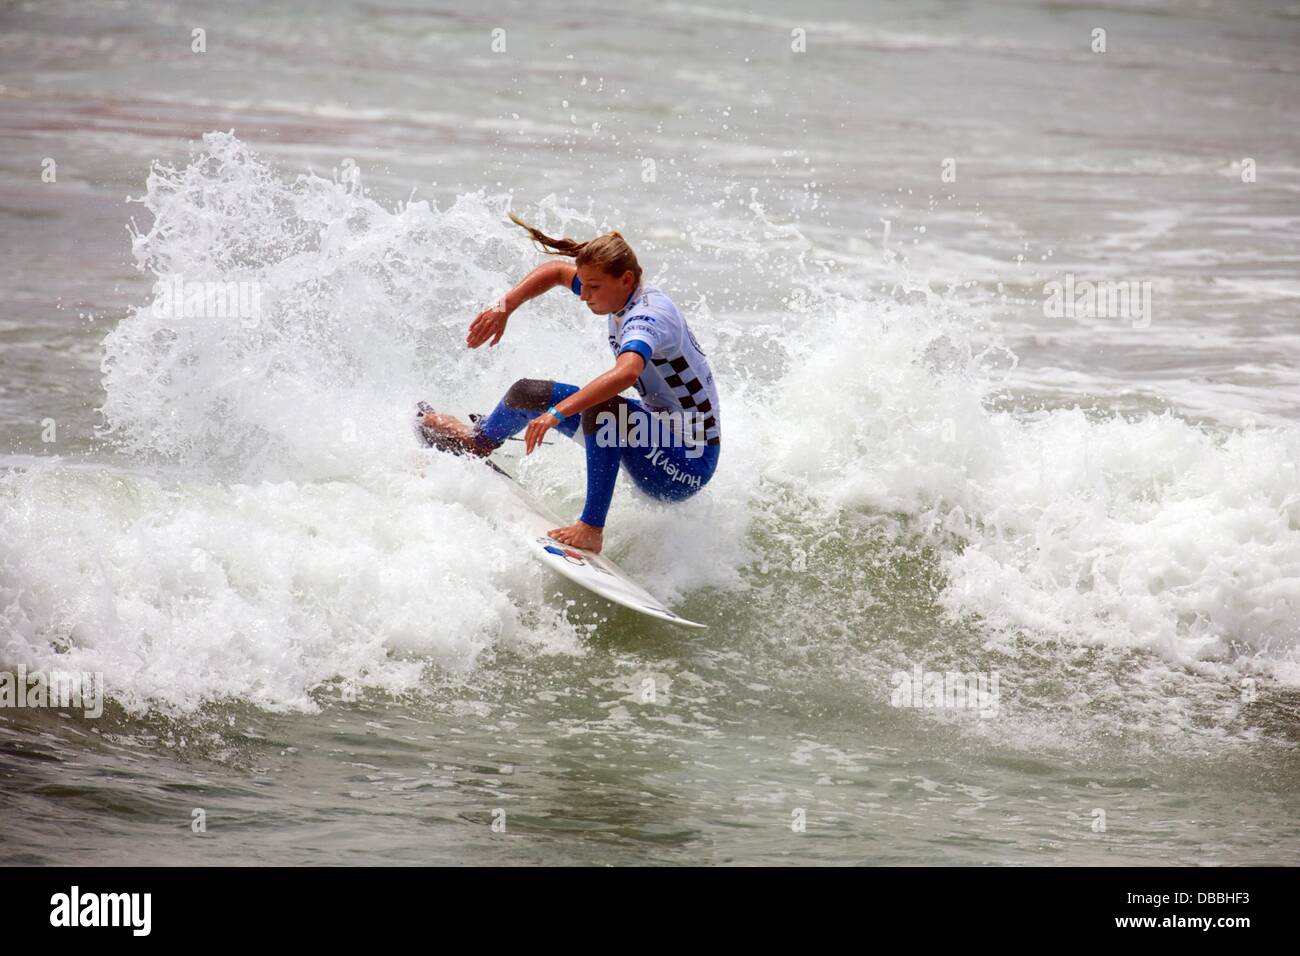 Huntington Beach, CA, USA. 27. Juli 2013. 26. Juli 2013: Lakey Peterson, der Titelverteidiger, reitet eine Welle während Förderwettbewerbs Vans uns Open of Surfing in Huntington Beach, CA. Credit: Csm/Alamy Live-Nachrichten Stockfoto